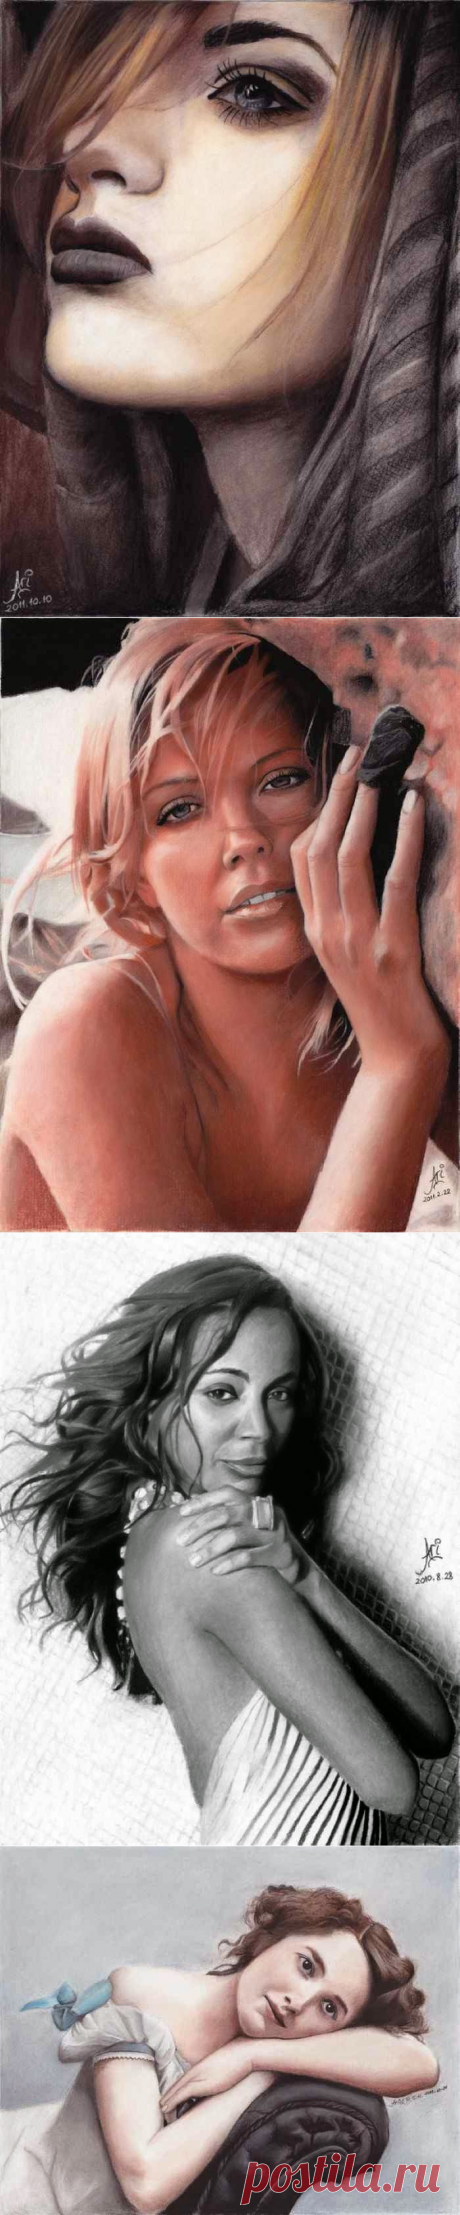 Ариэль Герреро (Ariel Guerrero) - чилийский художник